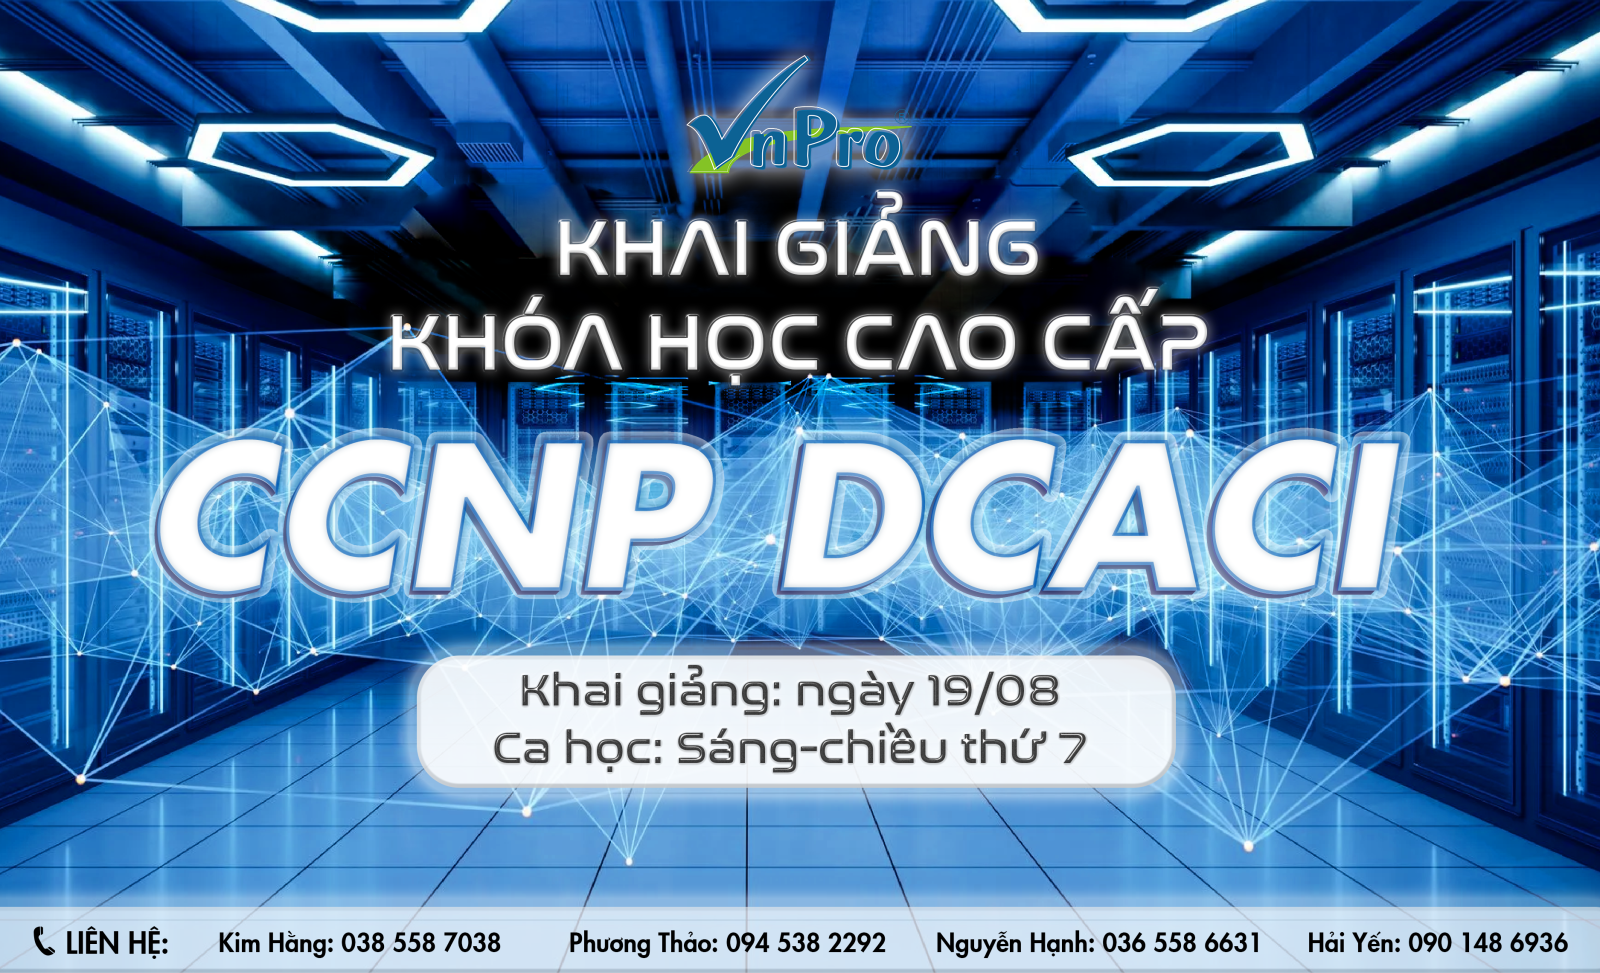 Khai giảng khóa học cao cấp CCNP DCACI tại VnPro